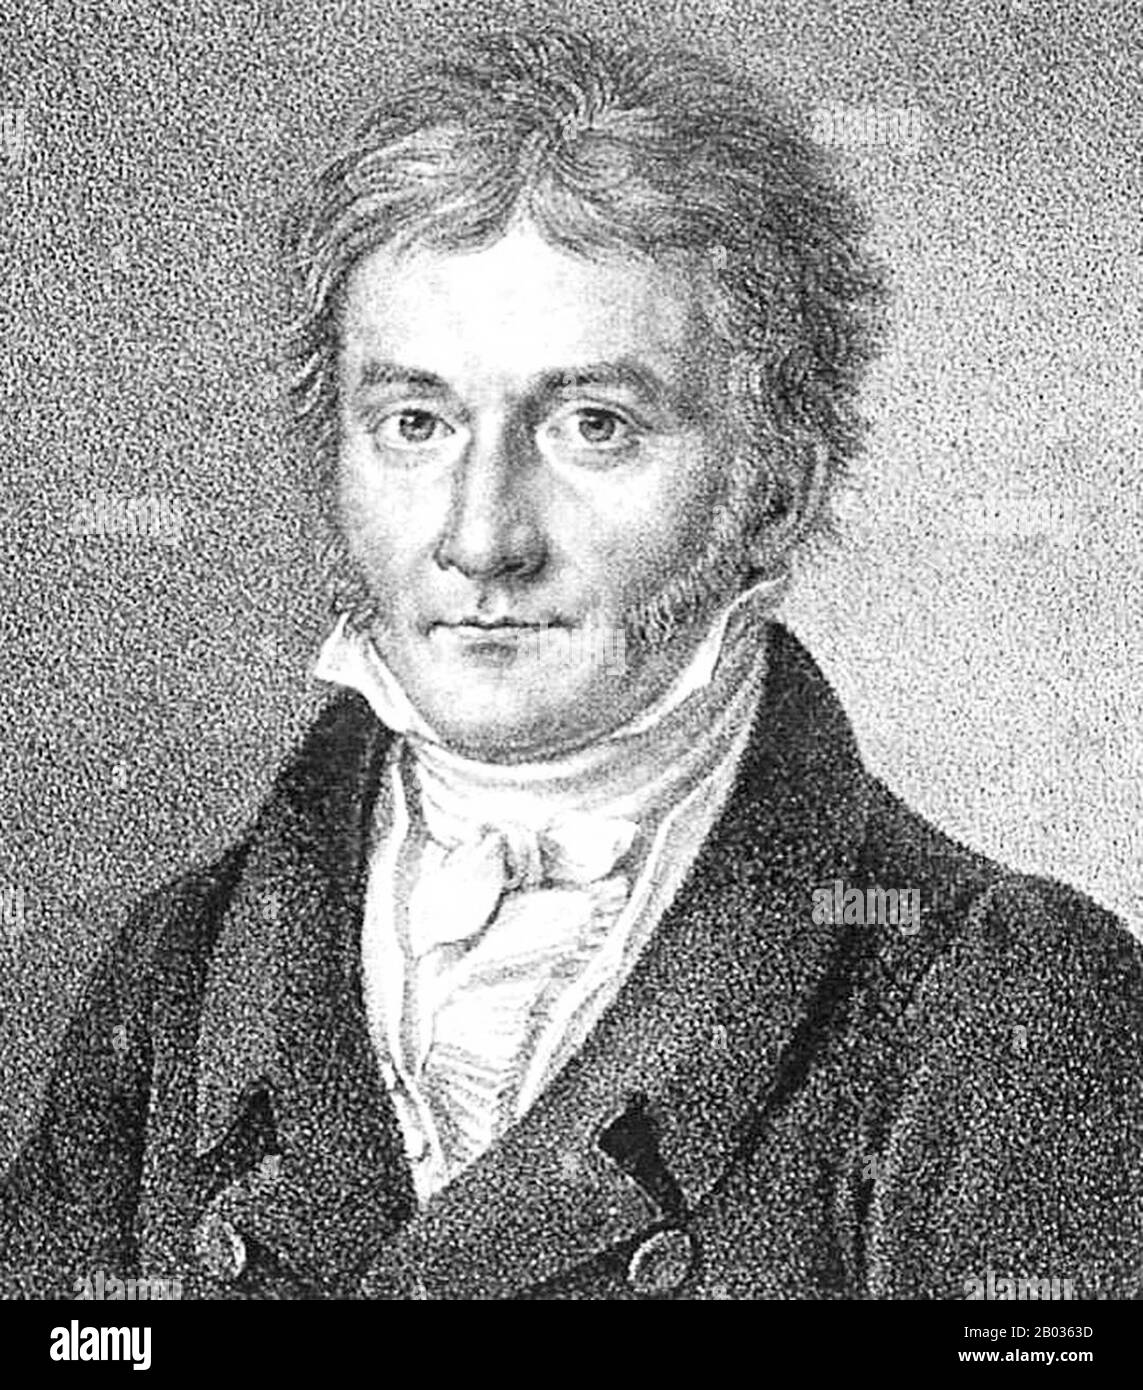 Johann Carl Friedrich Gauss (30 avril 1777 – 23 février 1855) était un mathématicien allemand qui a contribué de manière significative à de nombreux domaines, dont la théorie des nombres, l'algèbre, les statistiques, l'analyse, la géométrie différentielle, la géodésie, la géophysique, la mécanique, l'électrostatique, l'astronomie, la théorie matricielle et l'optique. Parfois appelé mathématicorum des Princeps (latin, « le premier des mathématiciens ») et « le plus grand mathématicien depuis l'antiquité », Gauss a une influence exceptionnelle dans de nombreux domaines des mathématiques et des sciences et est classé comme l'un des mathématiciens les plus influents de l'histoire. Banque D'Images